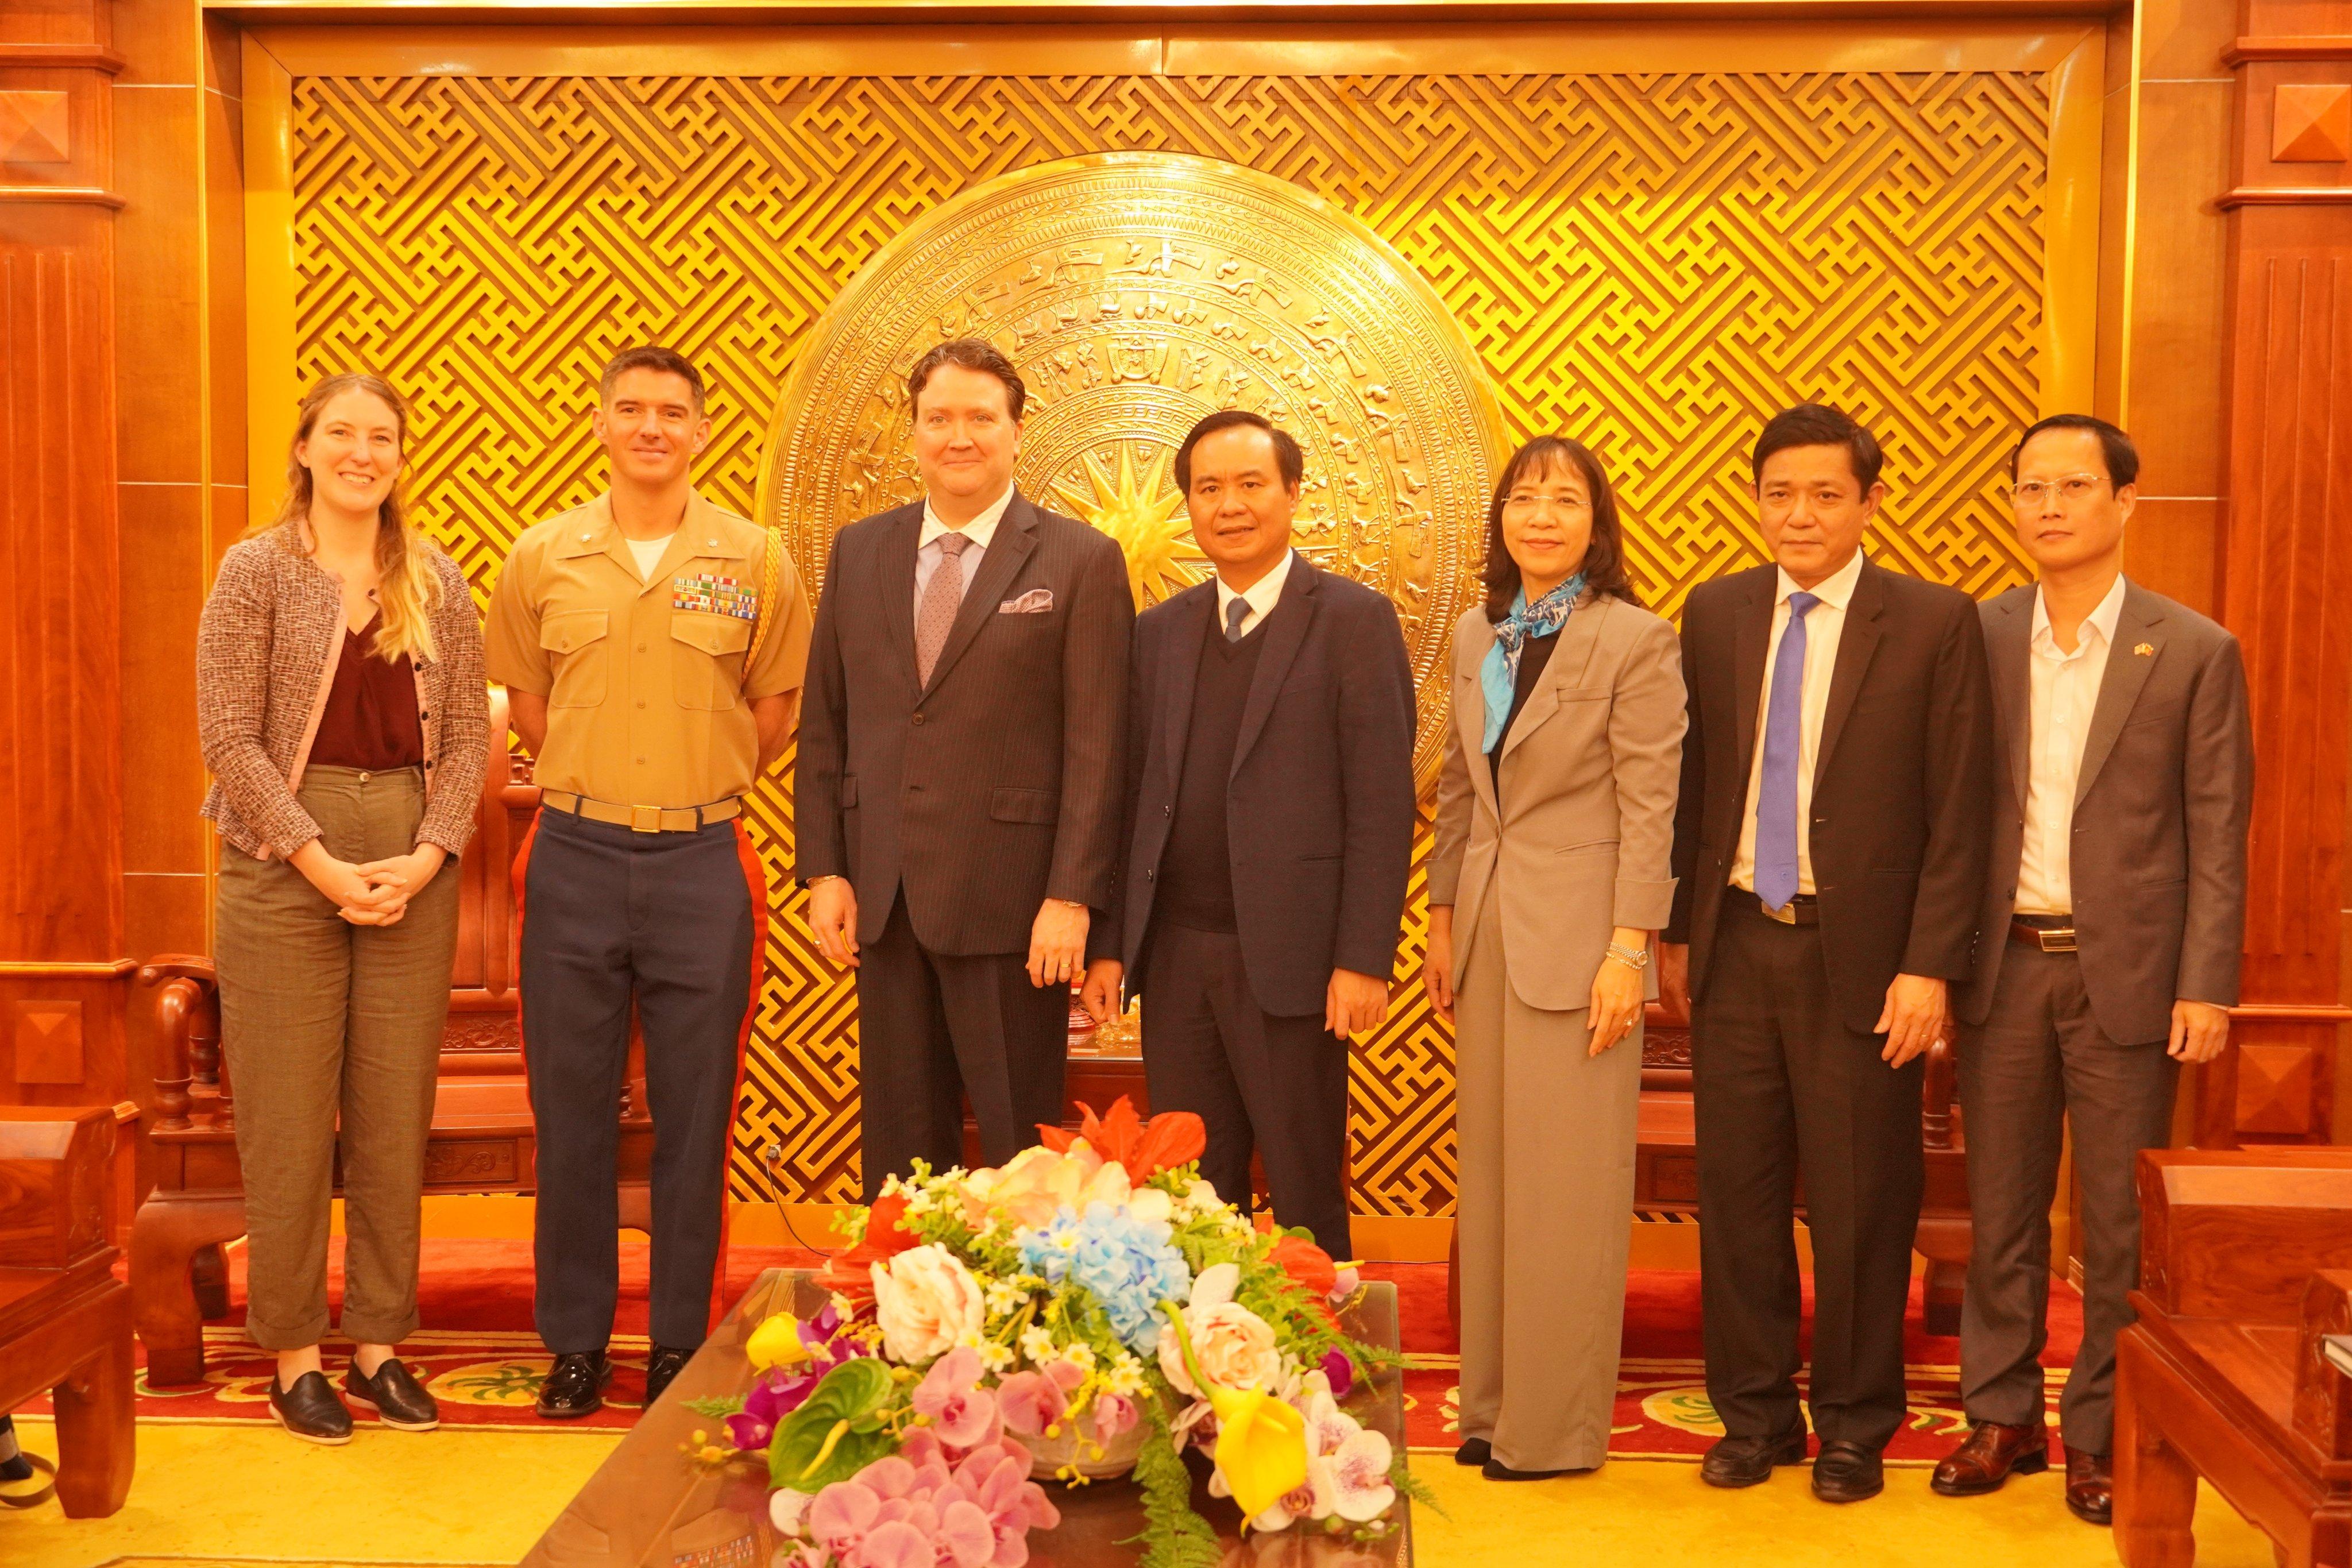 Đại sứ Hiệp chúng quốc Hoa Kỳ Marc E. Knapper thăm và làm việc tại tỉnh Quảng Trị